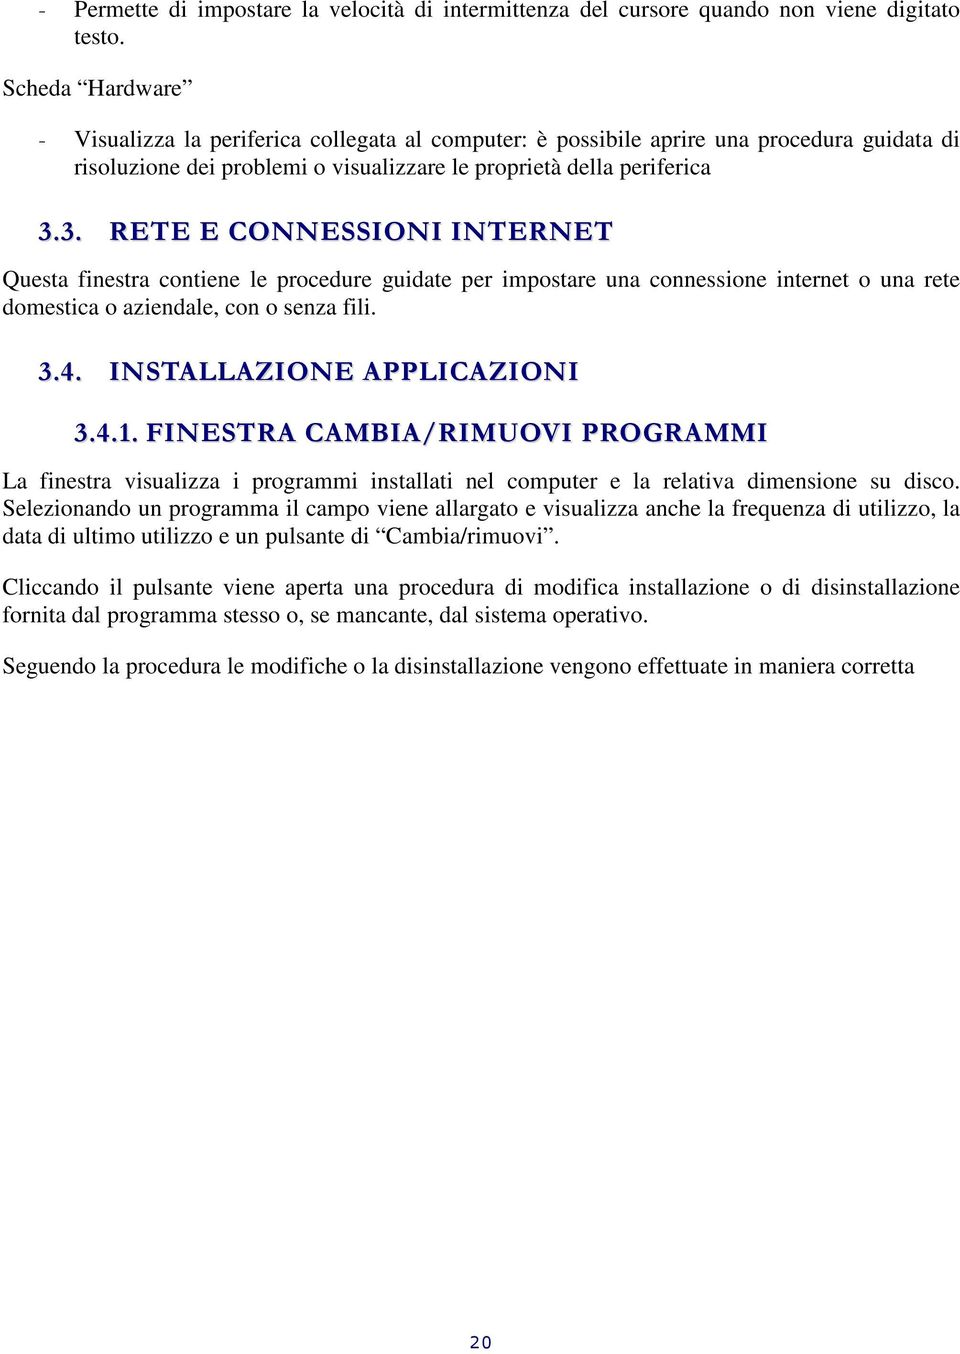 3. RETE E CONNESSIONI INTERNET Questa finestra contiene le procedure guidate per impostare una connessione internet o una rete domestica o aziendale, con o senza fili. 3.4.